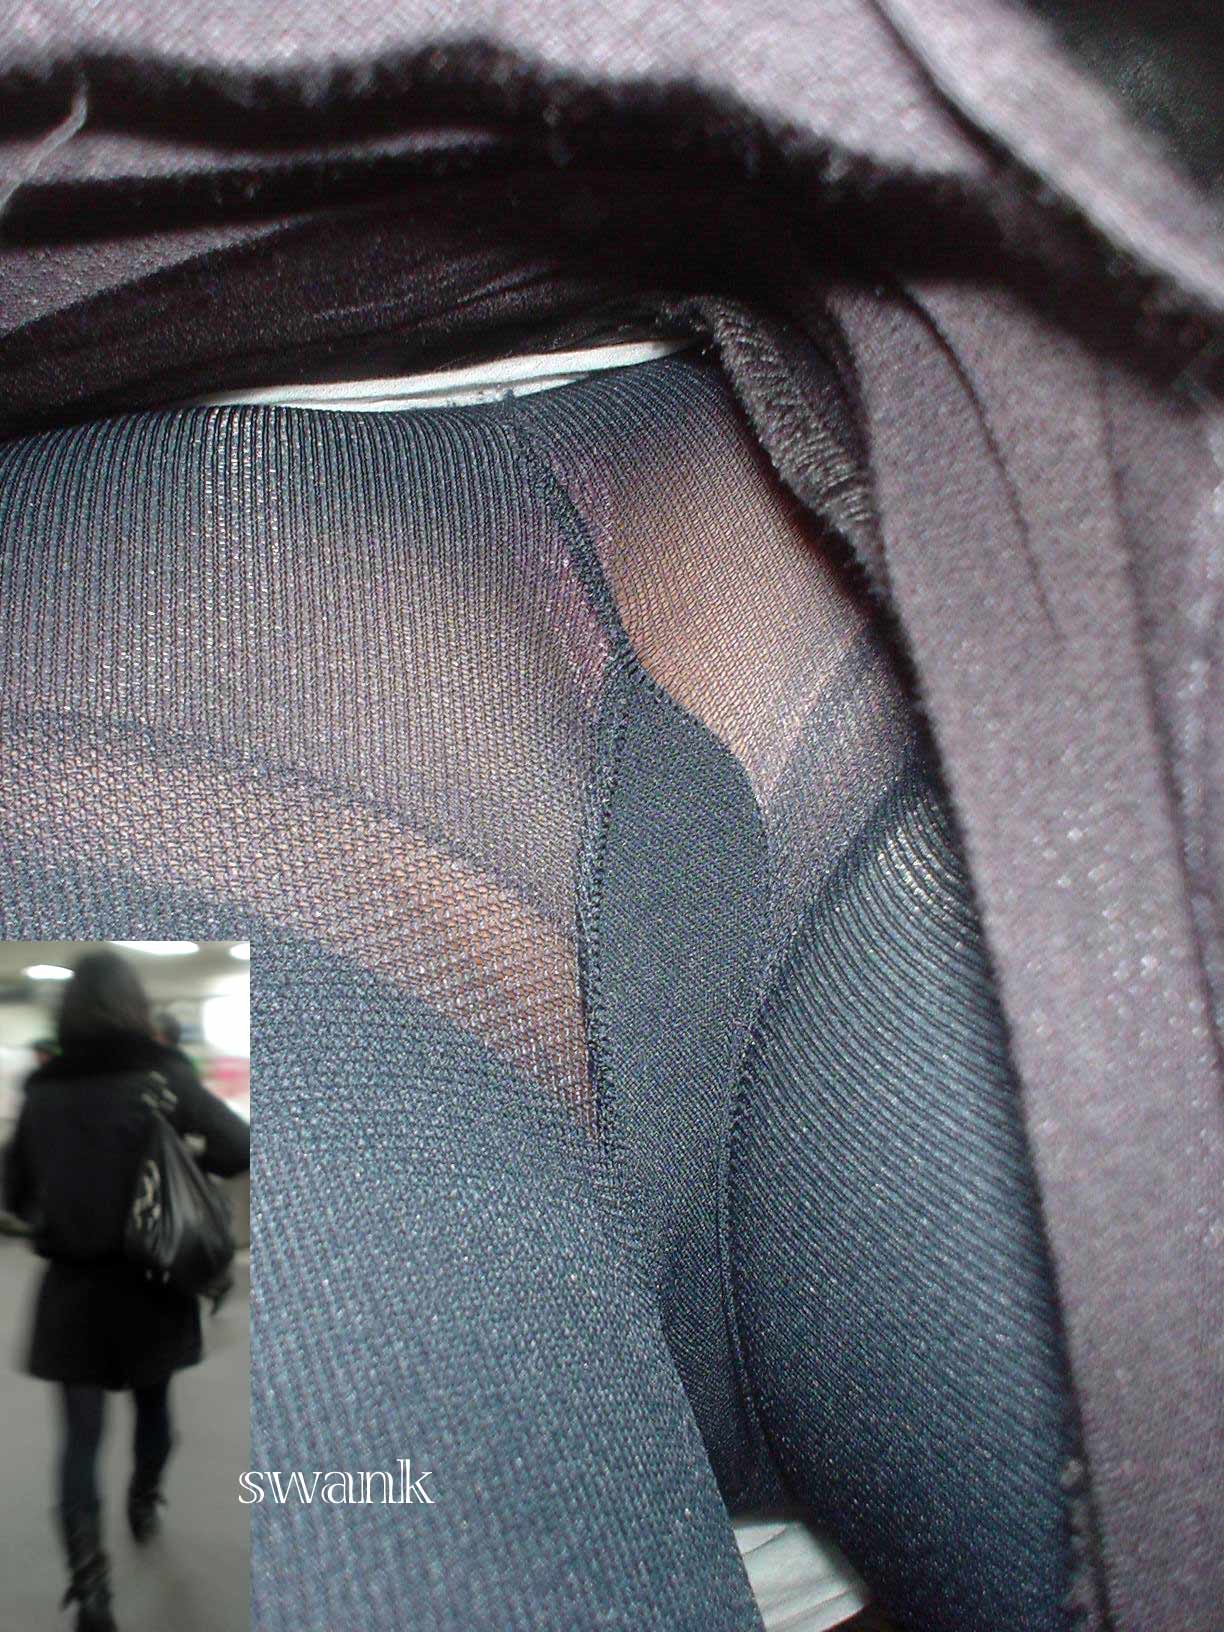 【パンチラエロ画像】本当に潜れば匂いつきｗ蒸れたスカート内部の逆さ撮りｗｗｗ 11